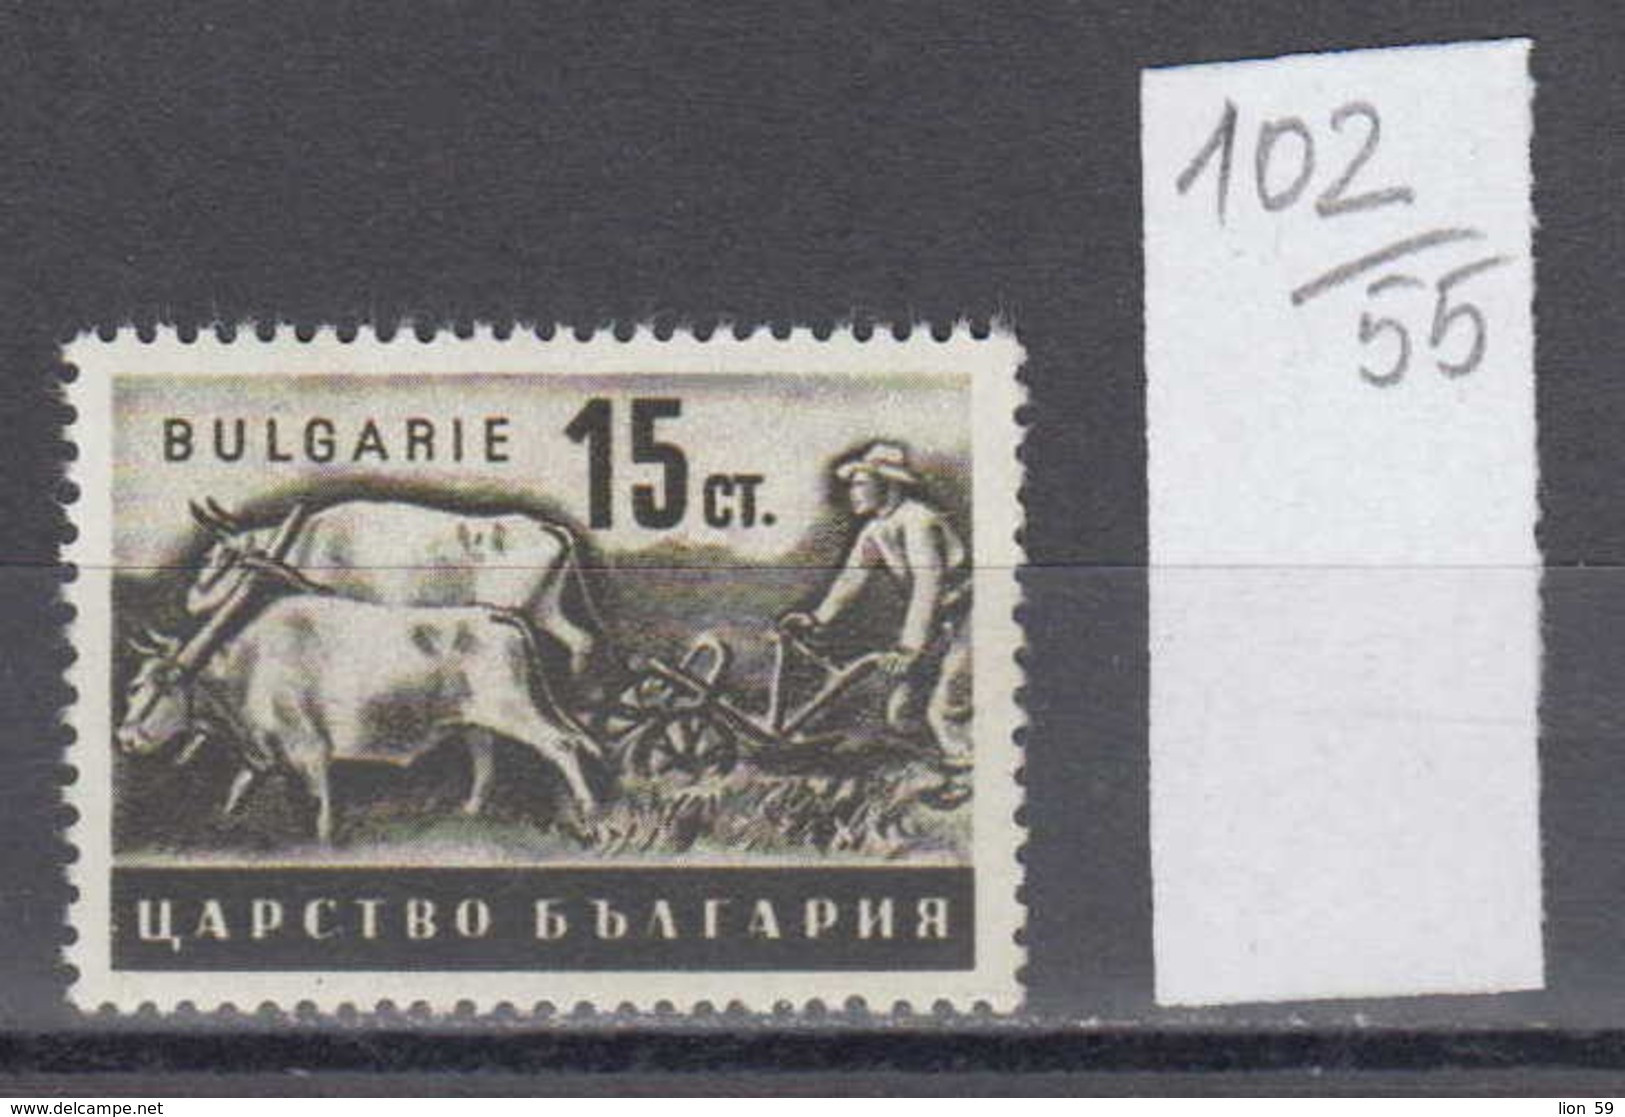 55K102 / 446 Bulgaria 1940 Michel Nr. 415 - Tillage Cattle Cow , Pflugender Bauer , Agricultural Scenes ** MNH - Ferme